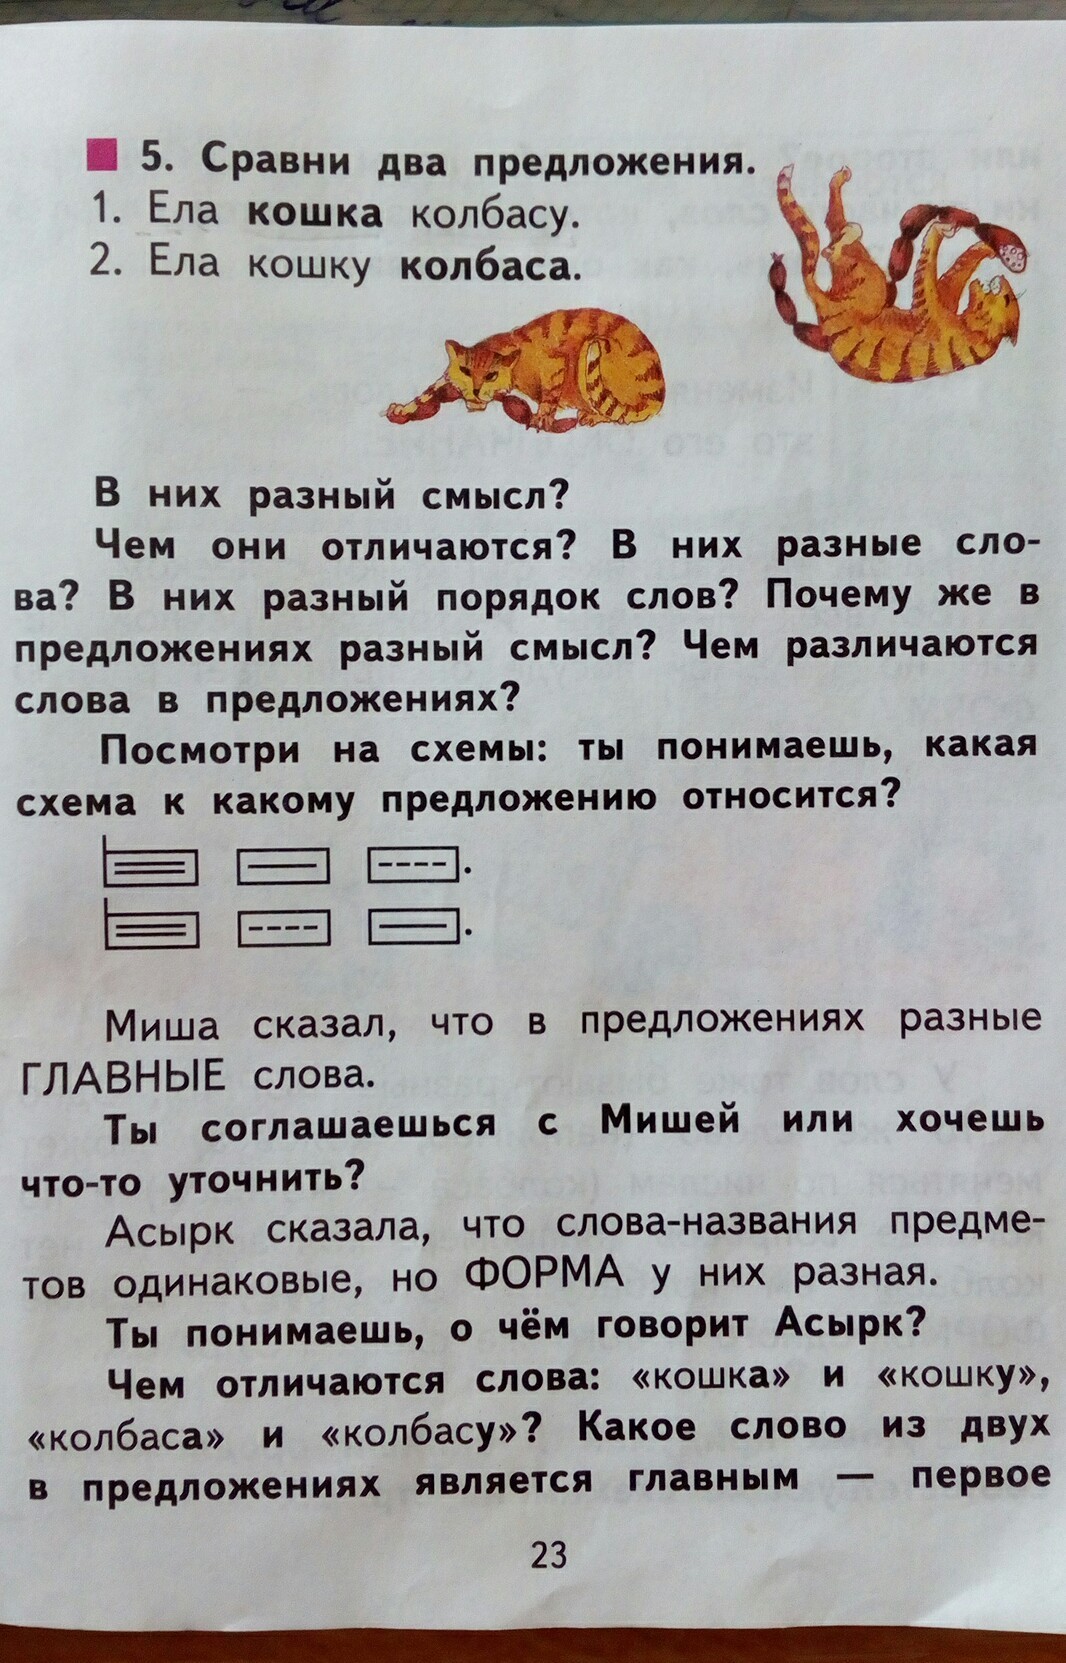 Предложение со словом колбаса